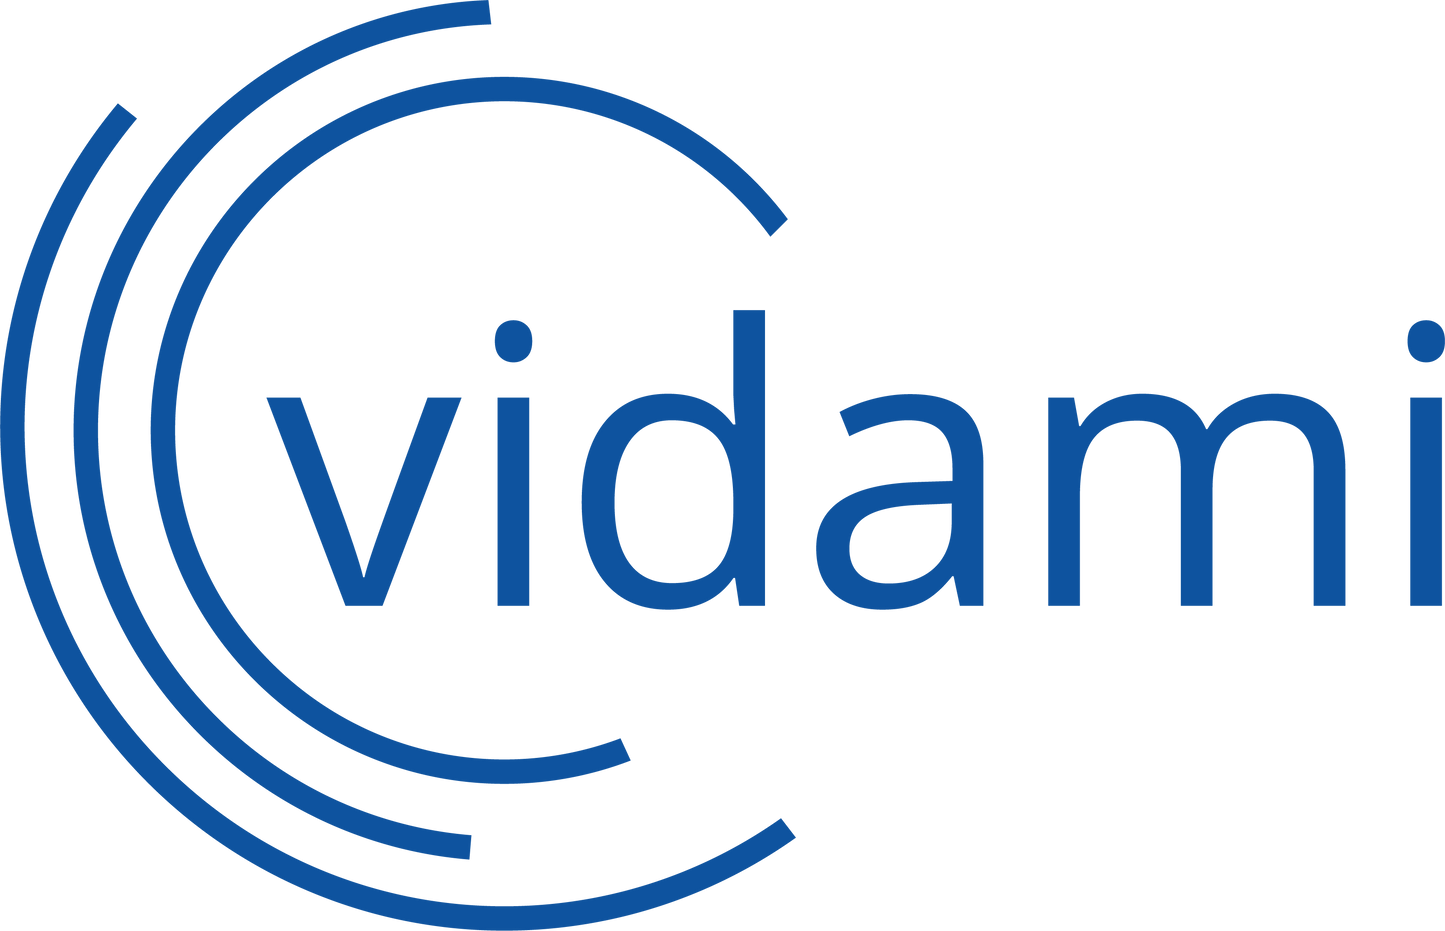 Vidami logo with 3 partial radiating circles